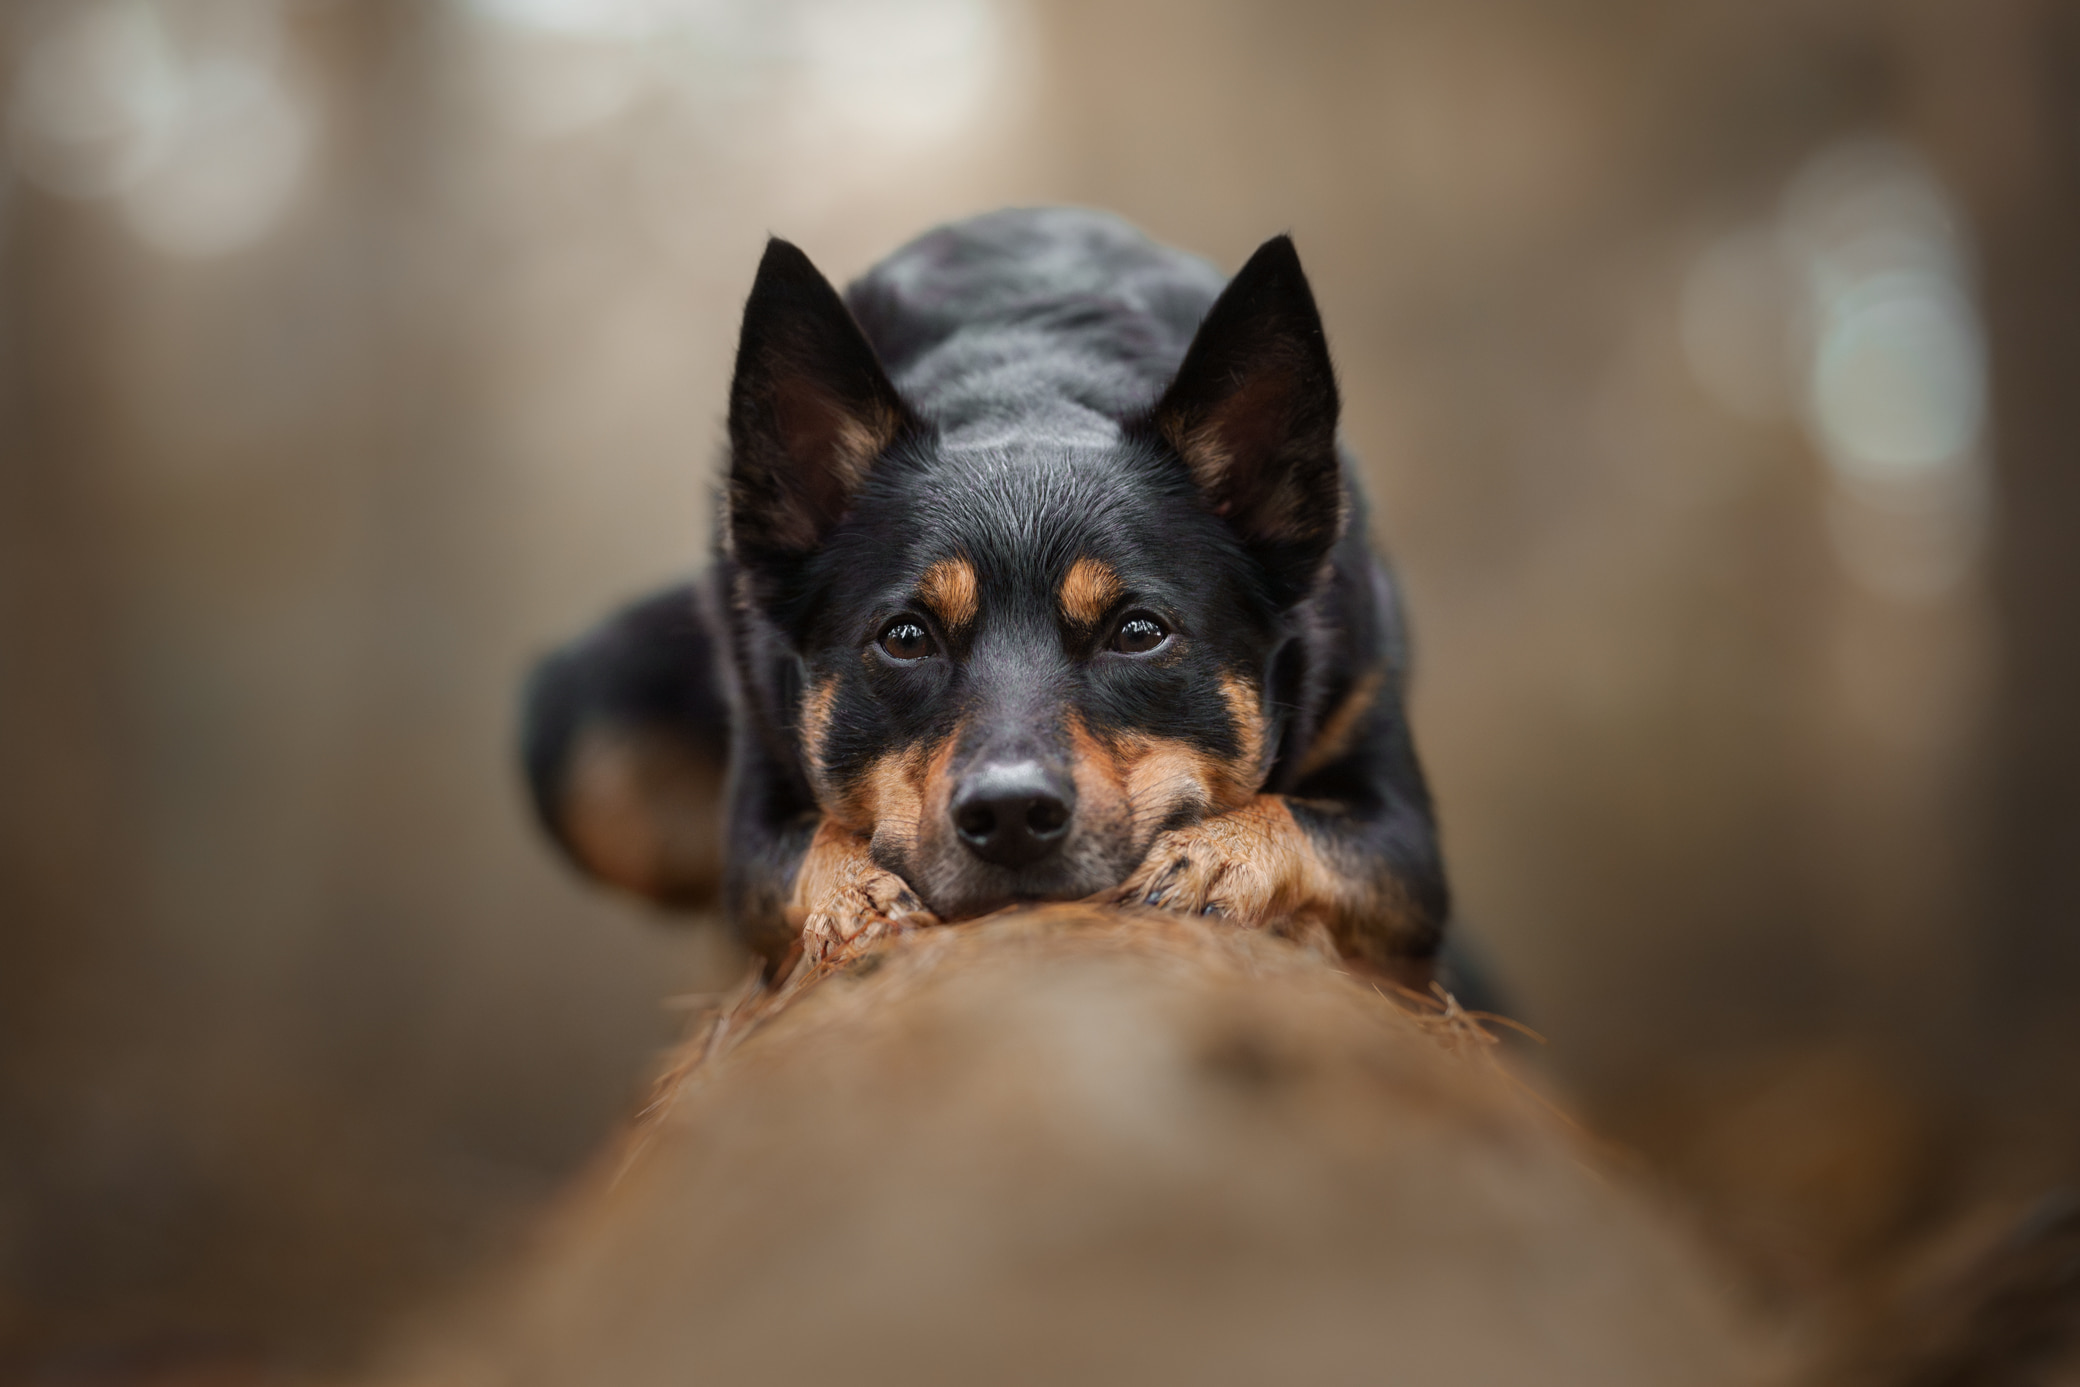 Pootografie-JoahBrouwers-Hondenfotograaf-fotograaf-kattenfotograaf-hondenfoto's-foto's-limburg-fotograaf limburg-hondenfotograaf limburg-fotograaf heerlen--4